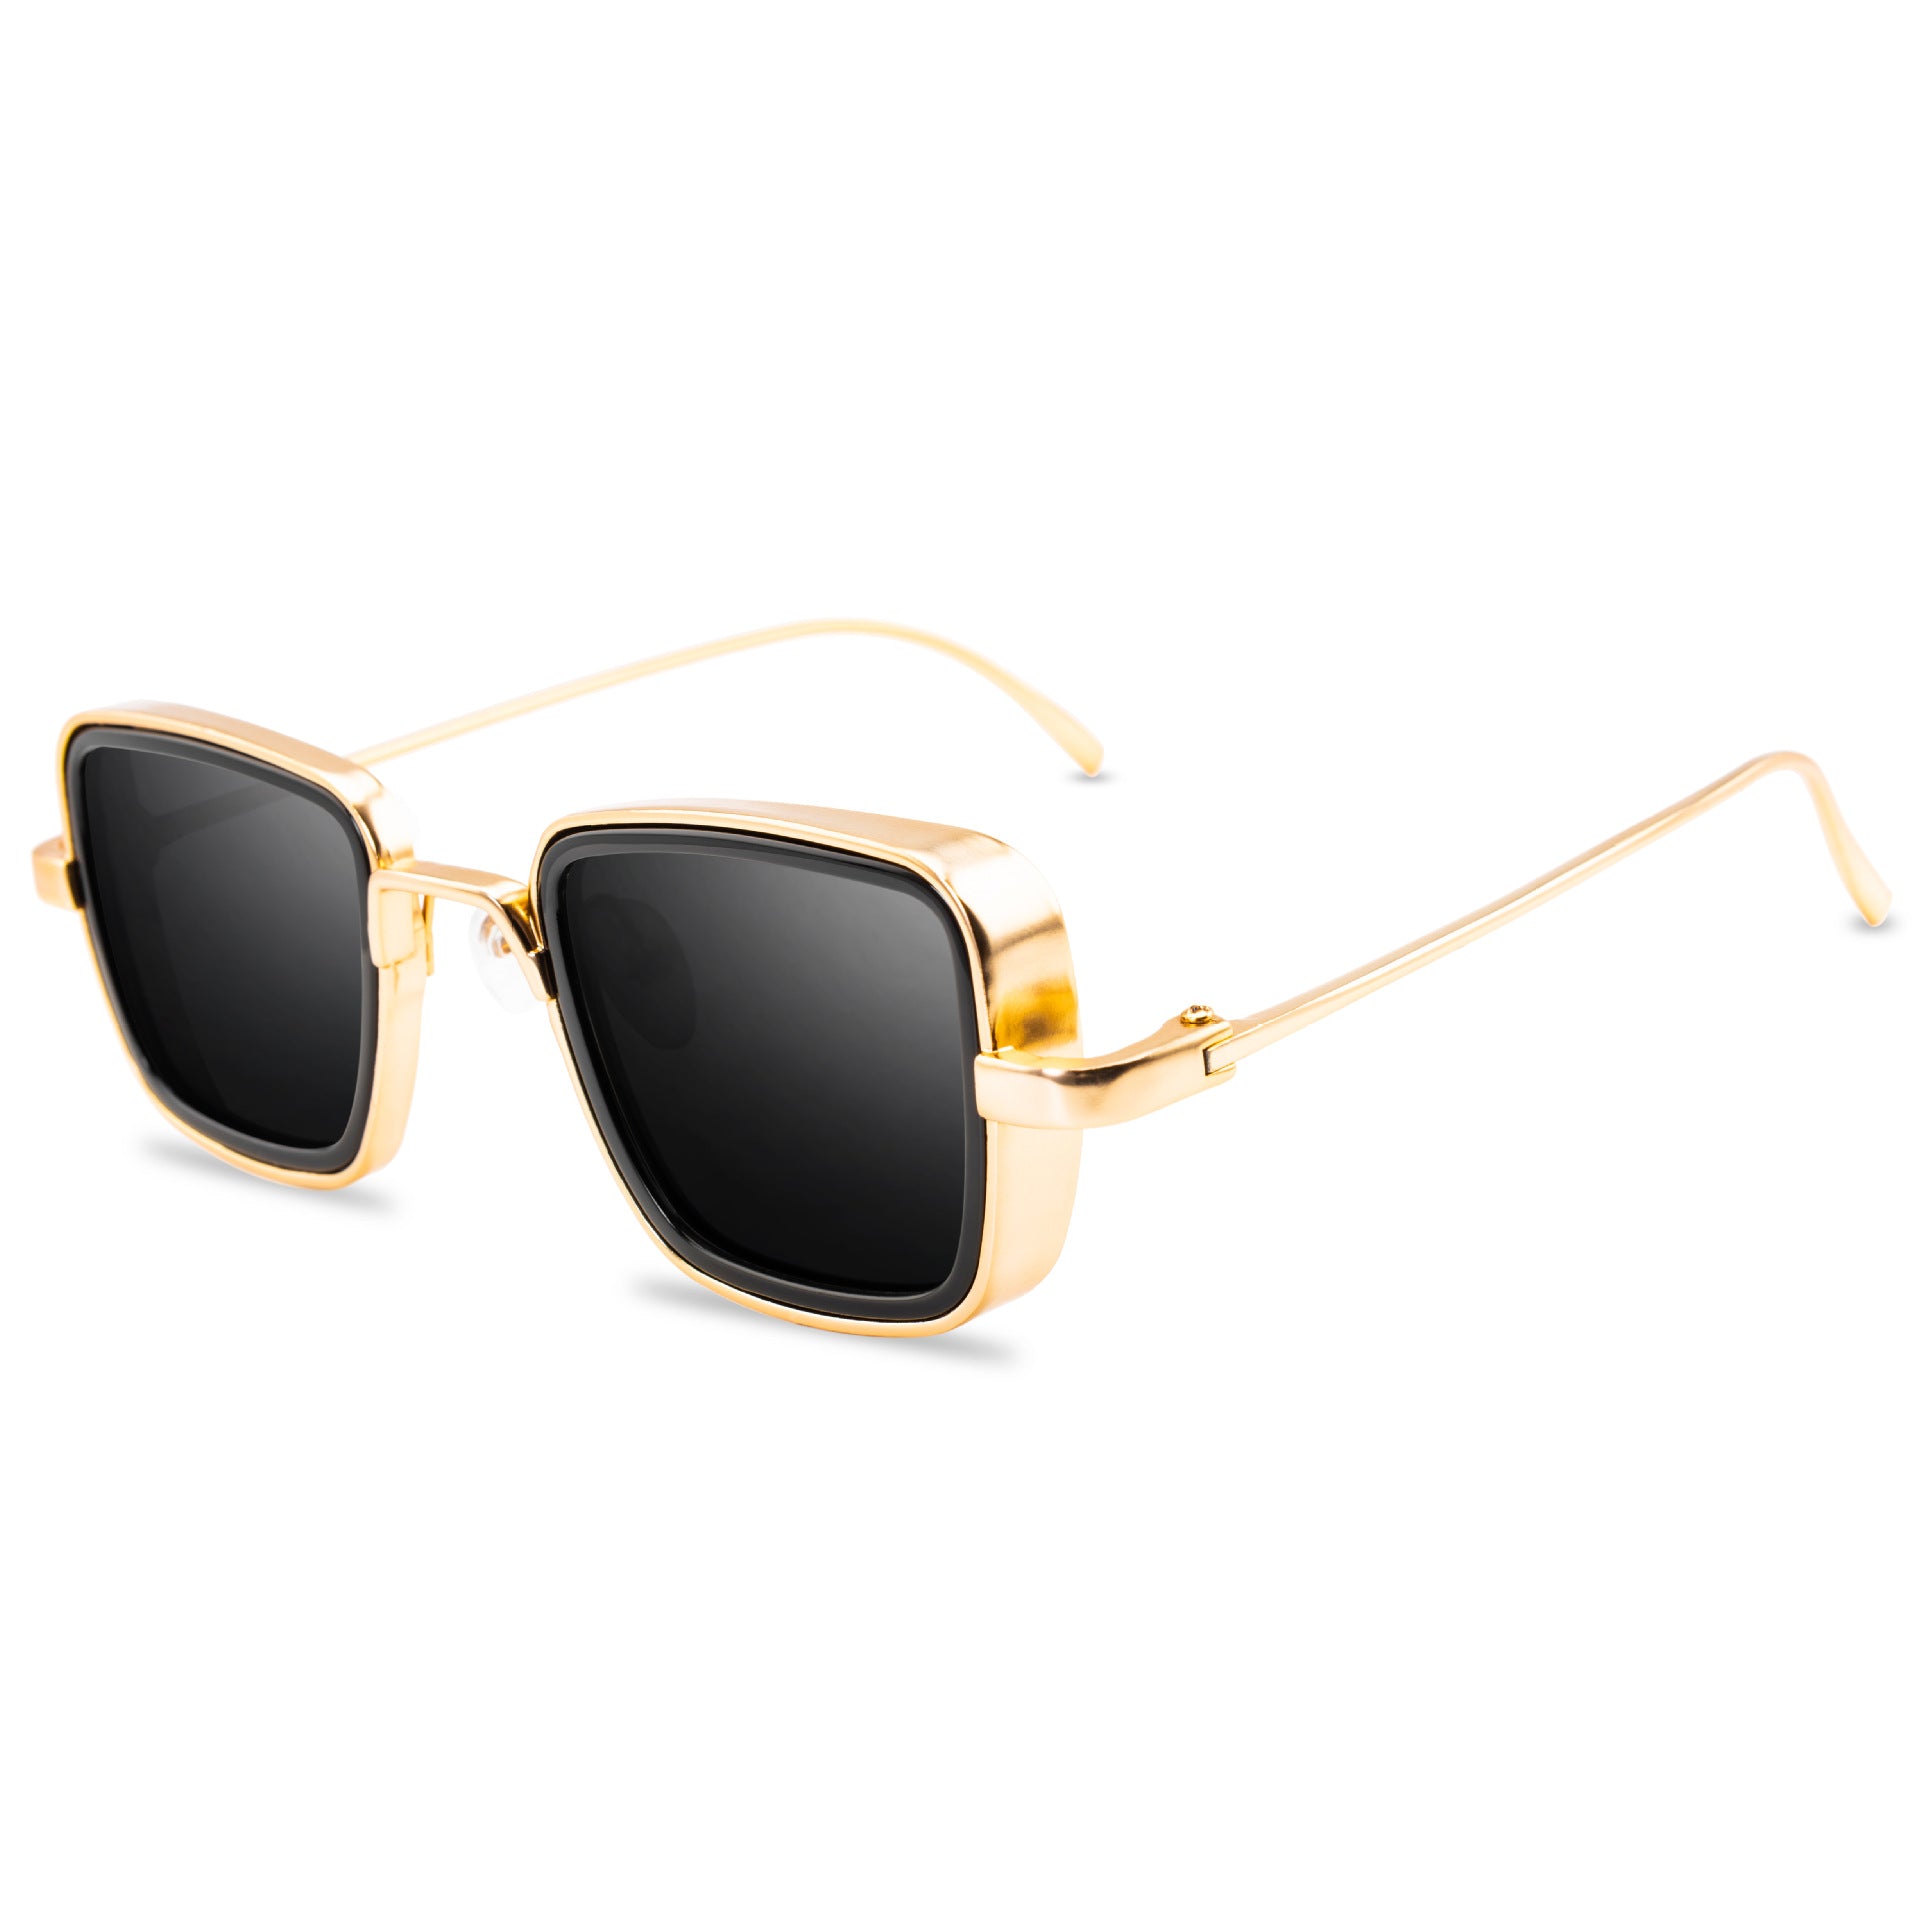 Men's Squared Metal Retro Sunglasses - Men's Sunglasses - New In